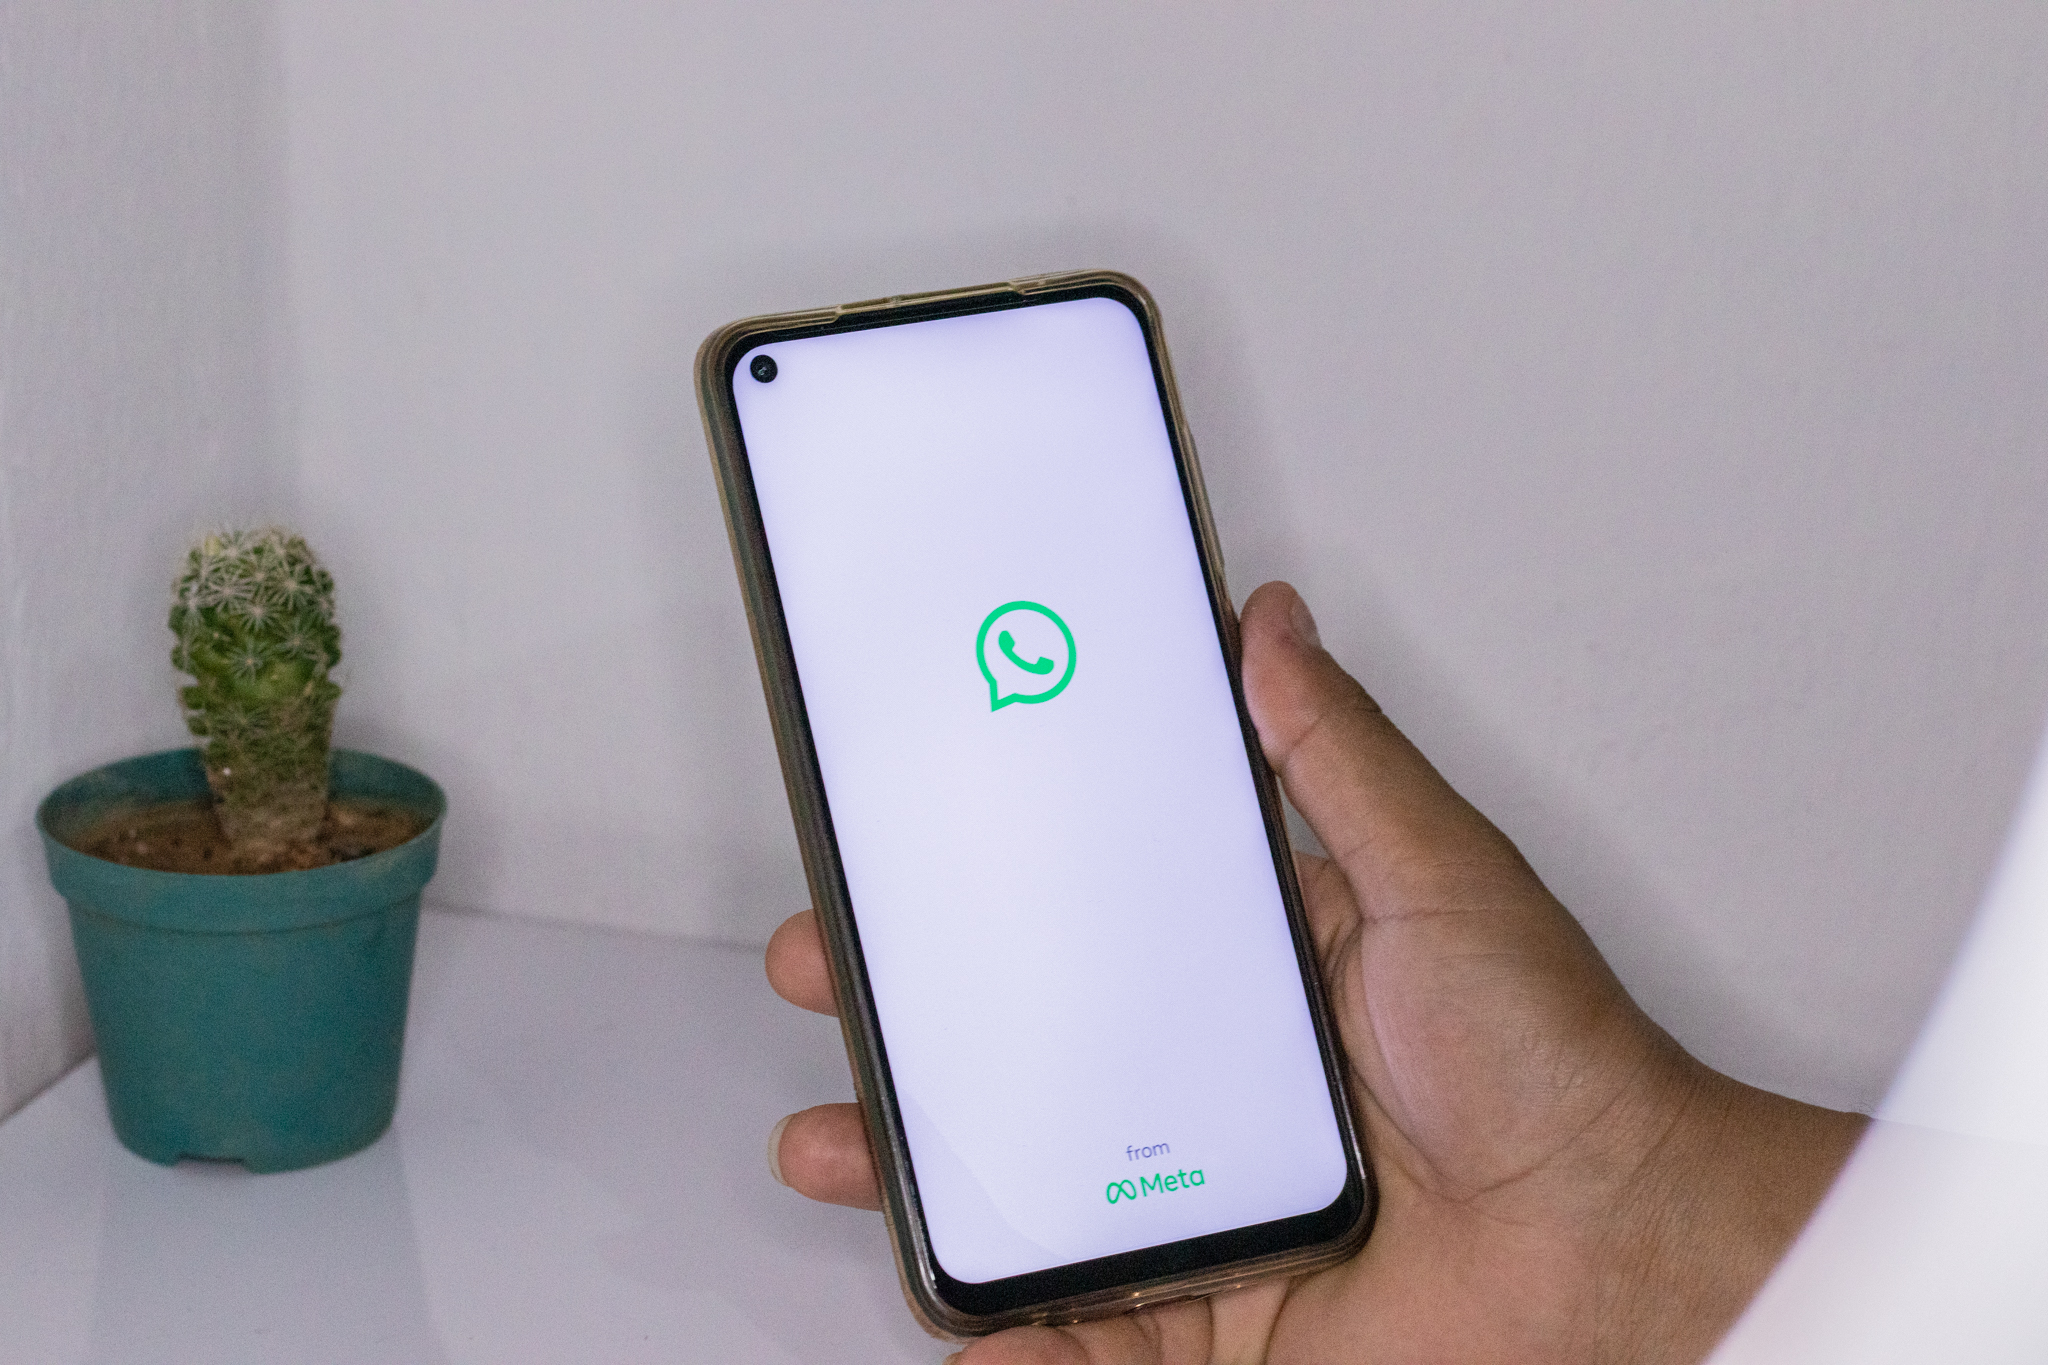 Você terá que ficar atento às novas regras do WhatsApp que serão lançadas em breve no app. A aceitação será obrigatório em alguns casos.